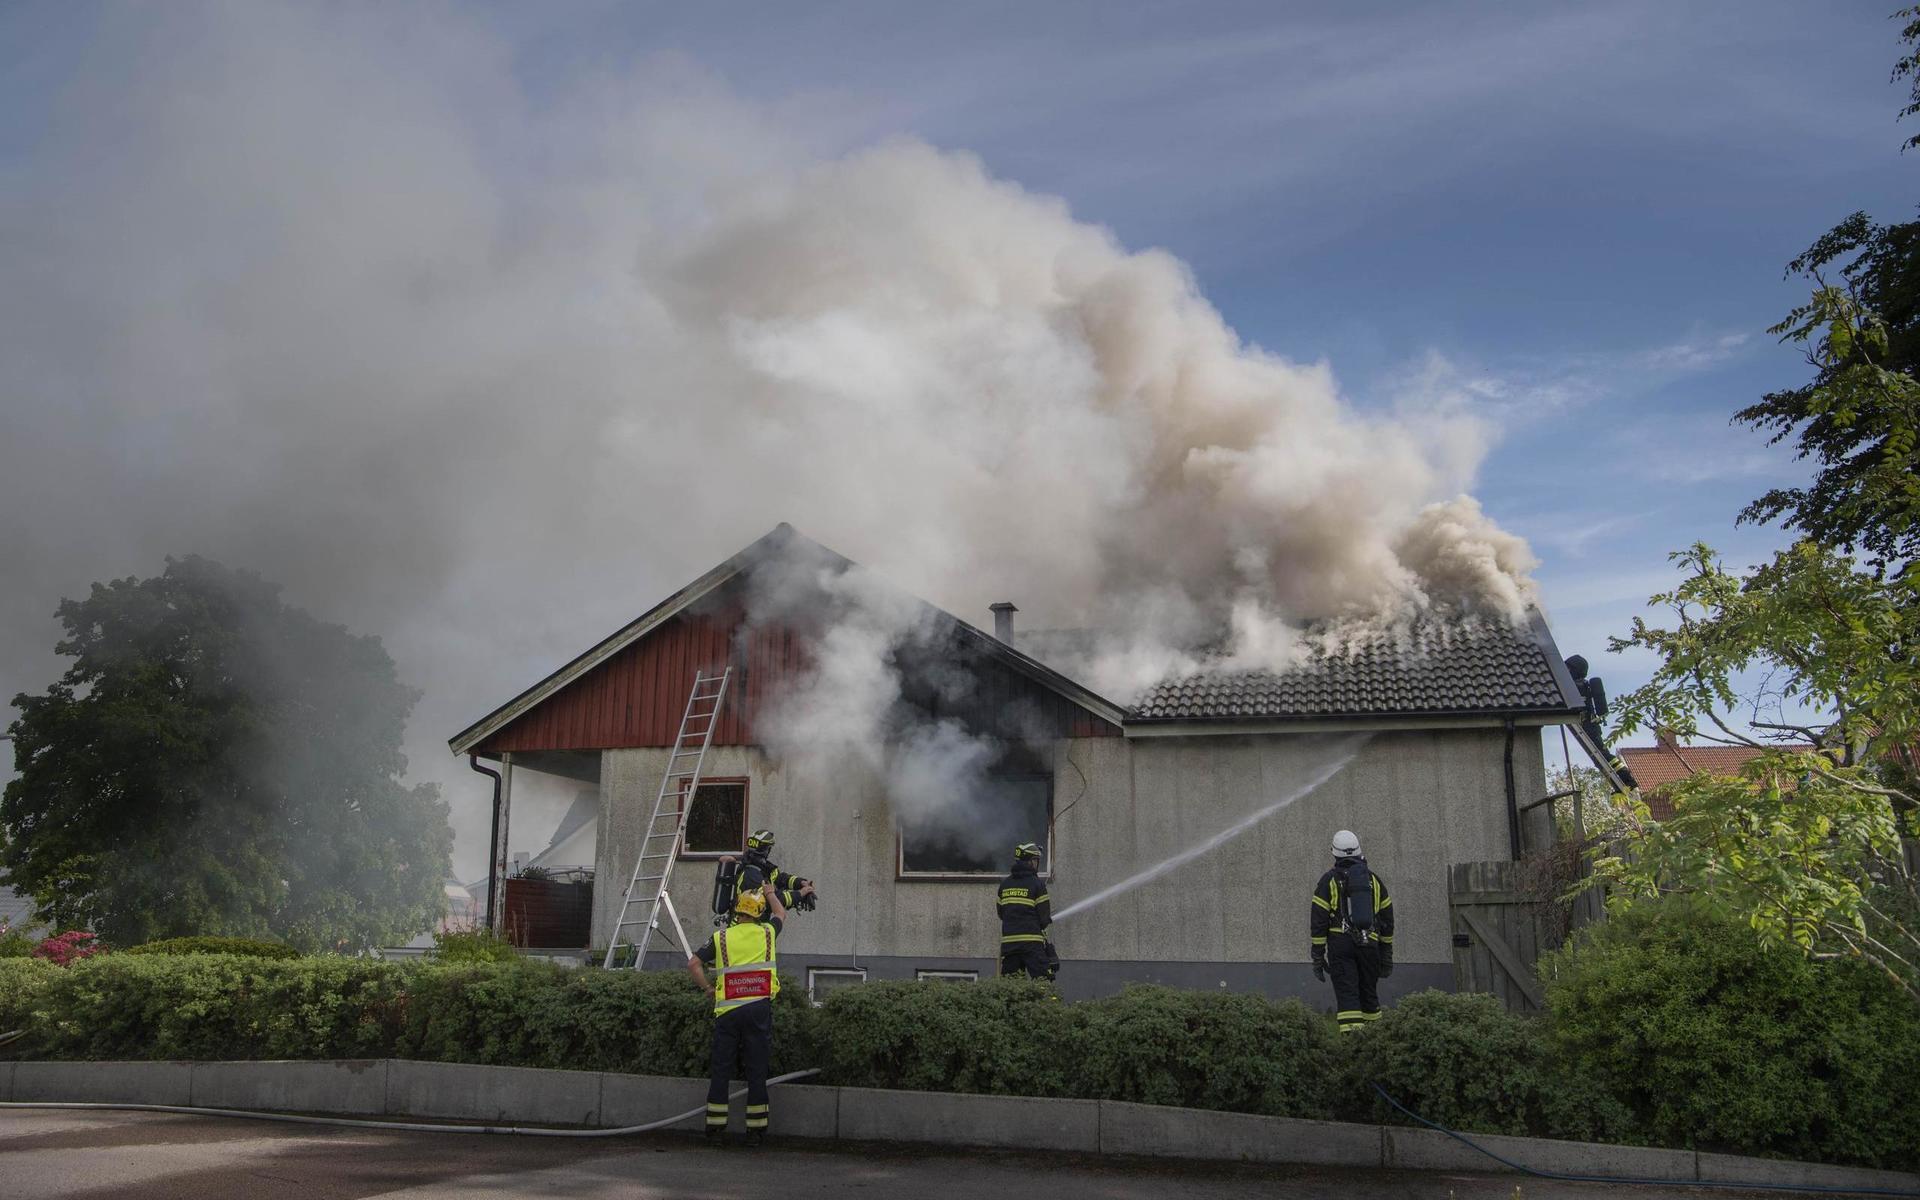 Räddningstjänsten larmades om brand i en villa på Kärleken under måndagseftermiddagen.